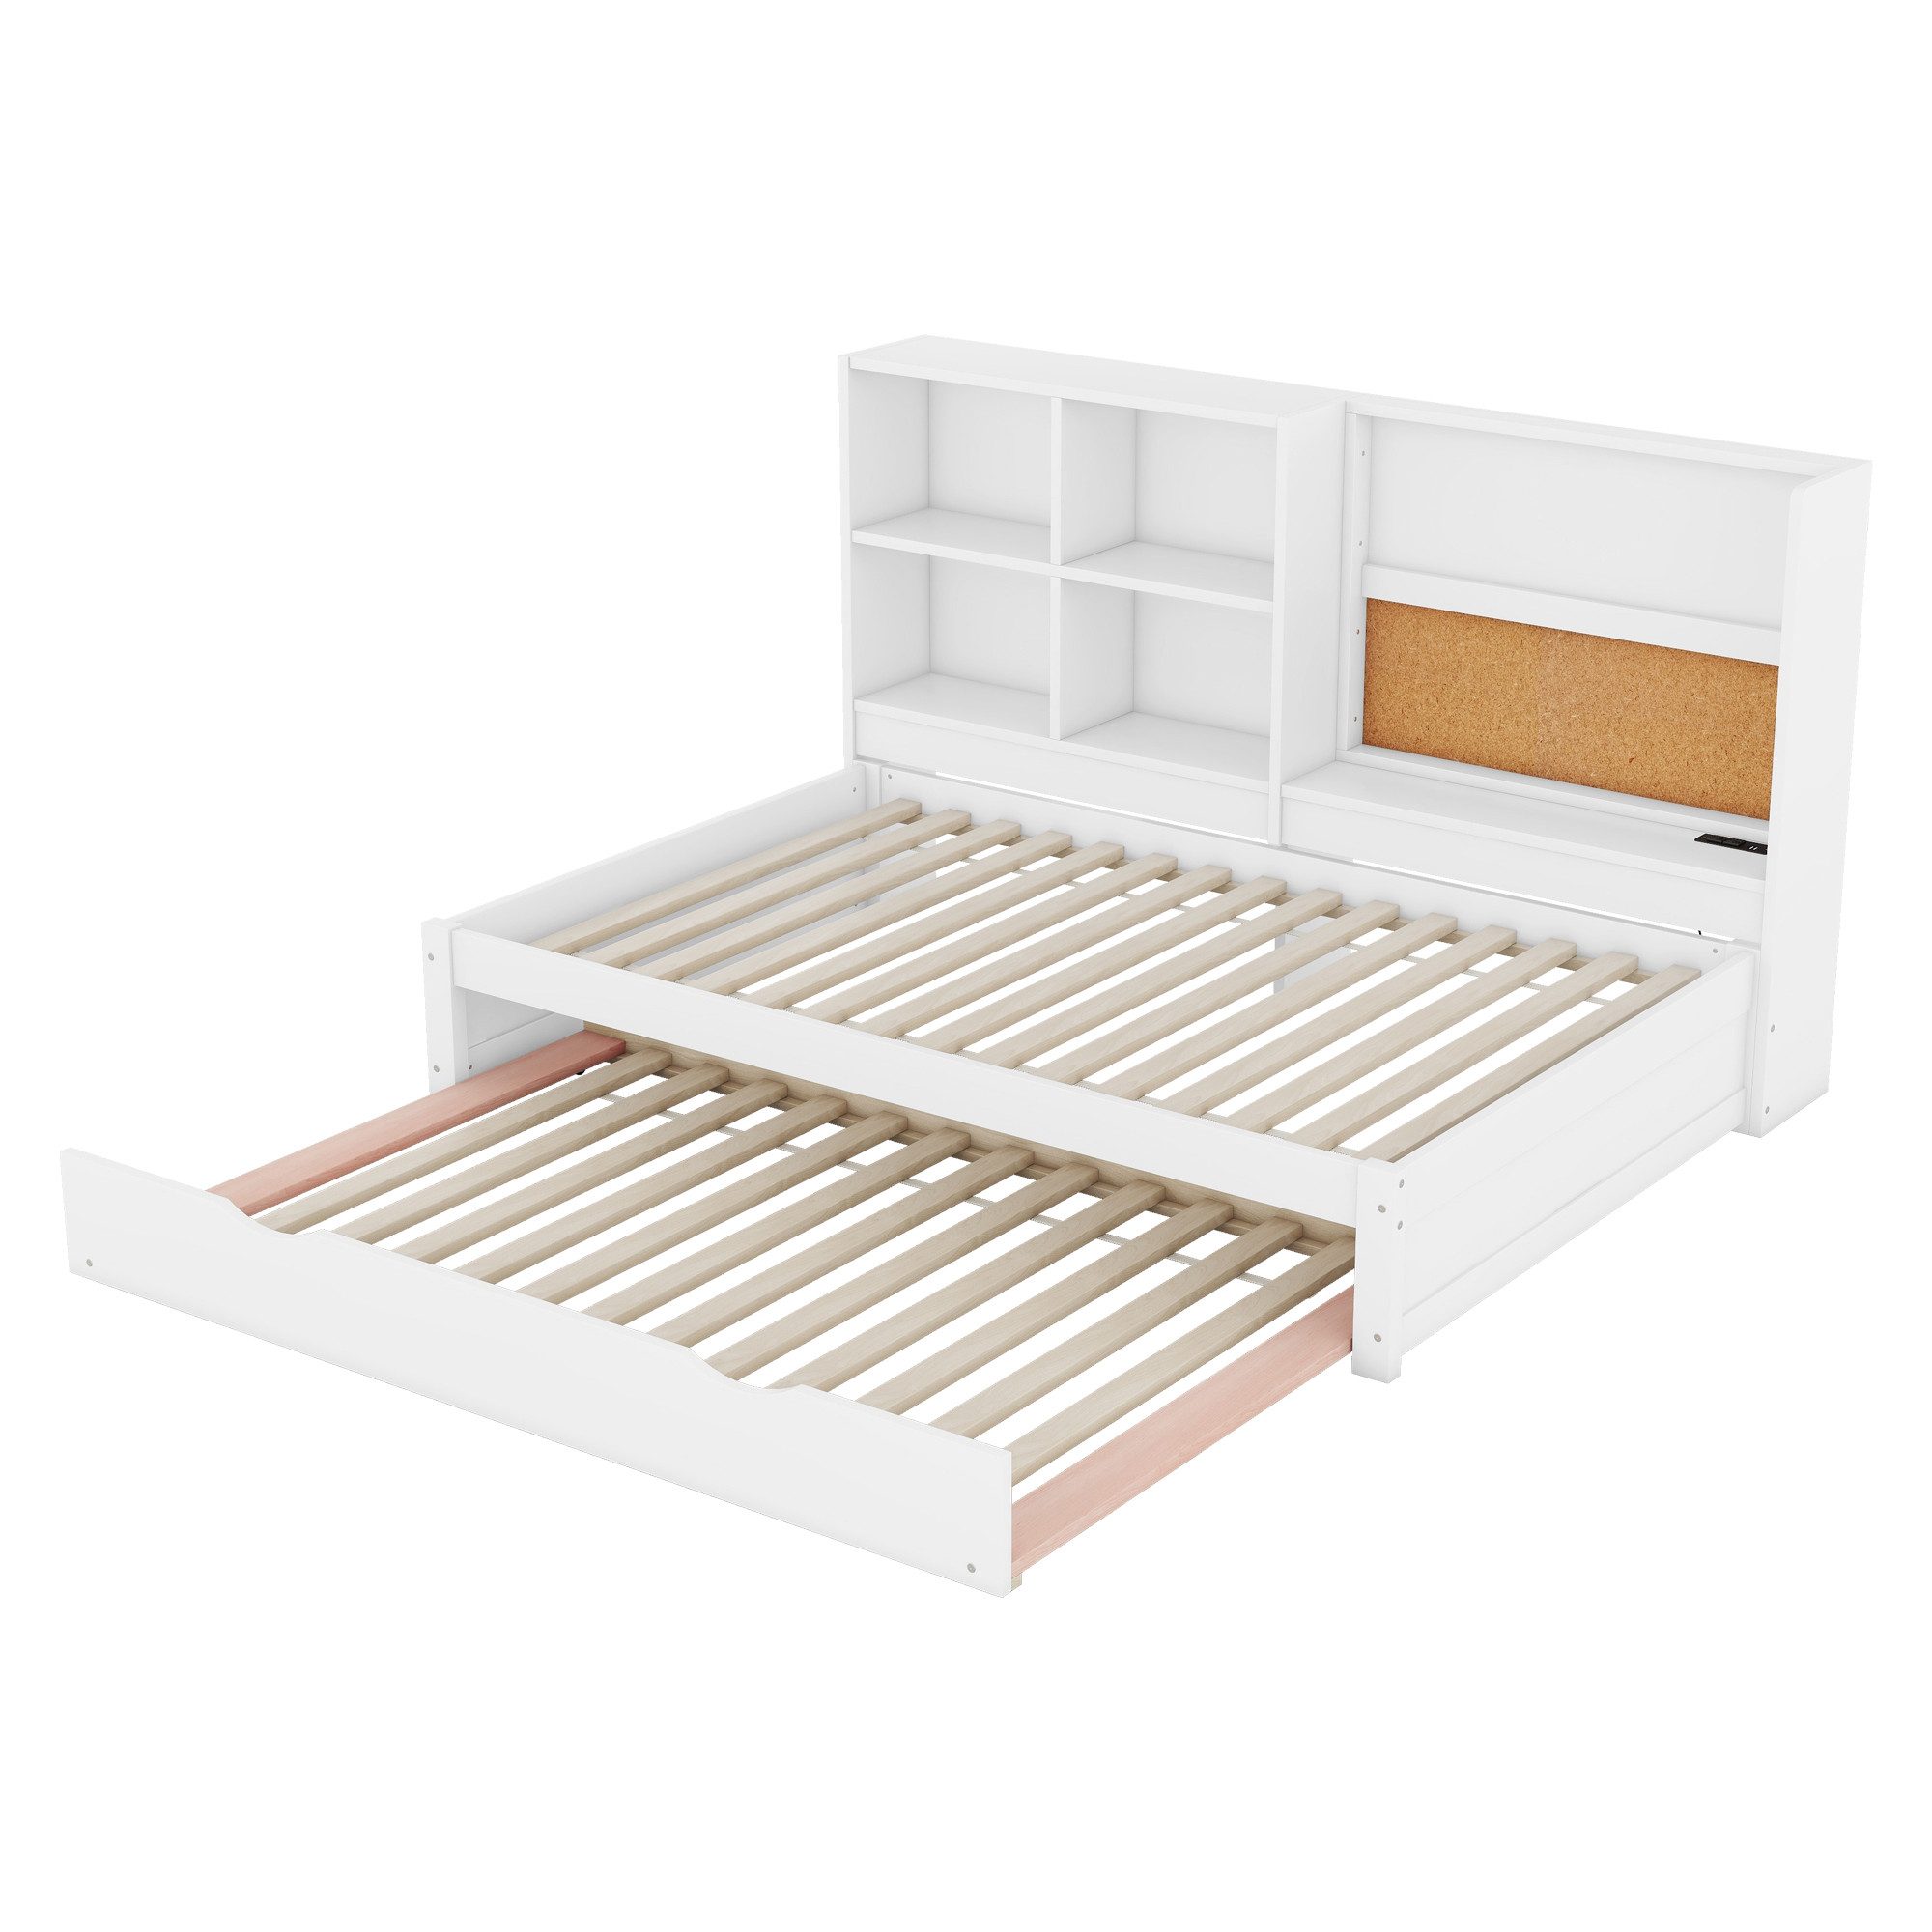 Welikera Einzelbett 90*200 cm Schlafsofa,Ausziehbarem Bett,mit Mehrere Staufächer, Ausziehbarem Bett,USB-Ladeanschluss,Zeichenbrett,Mehrere Staufächer